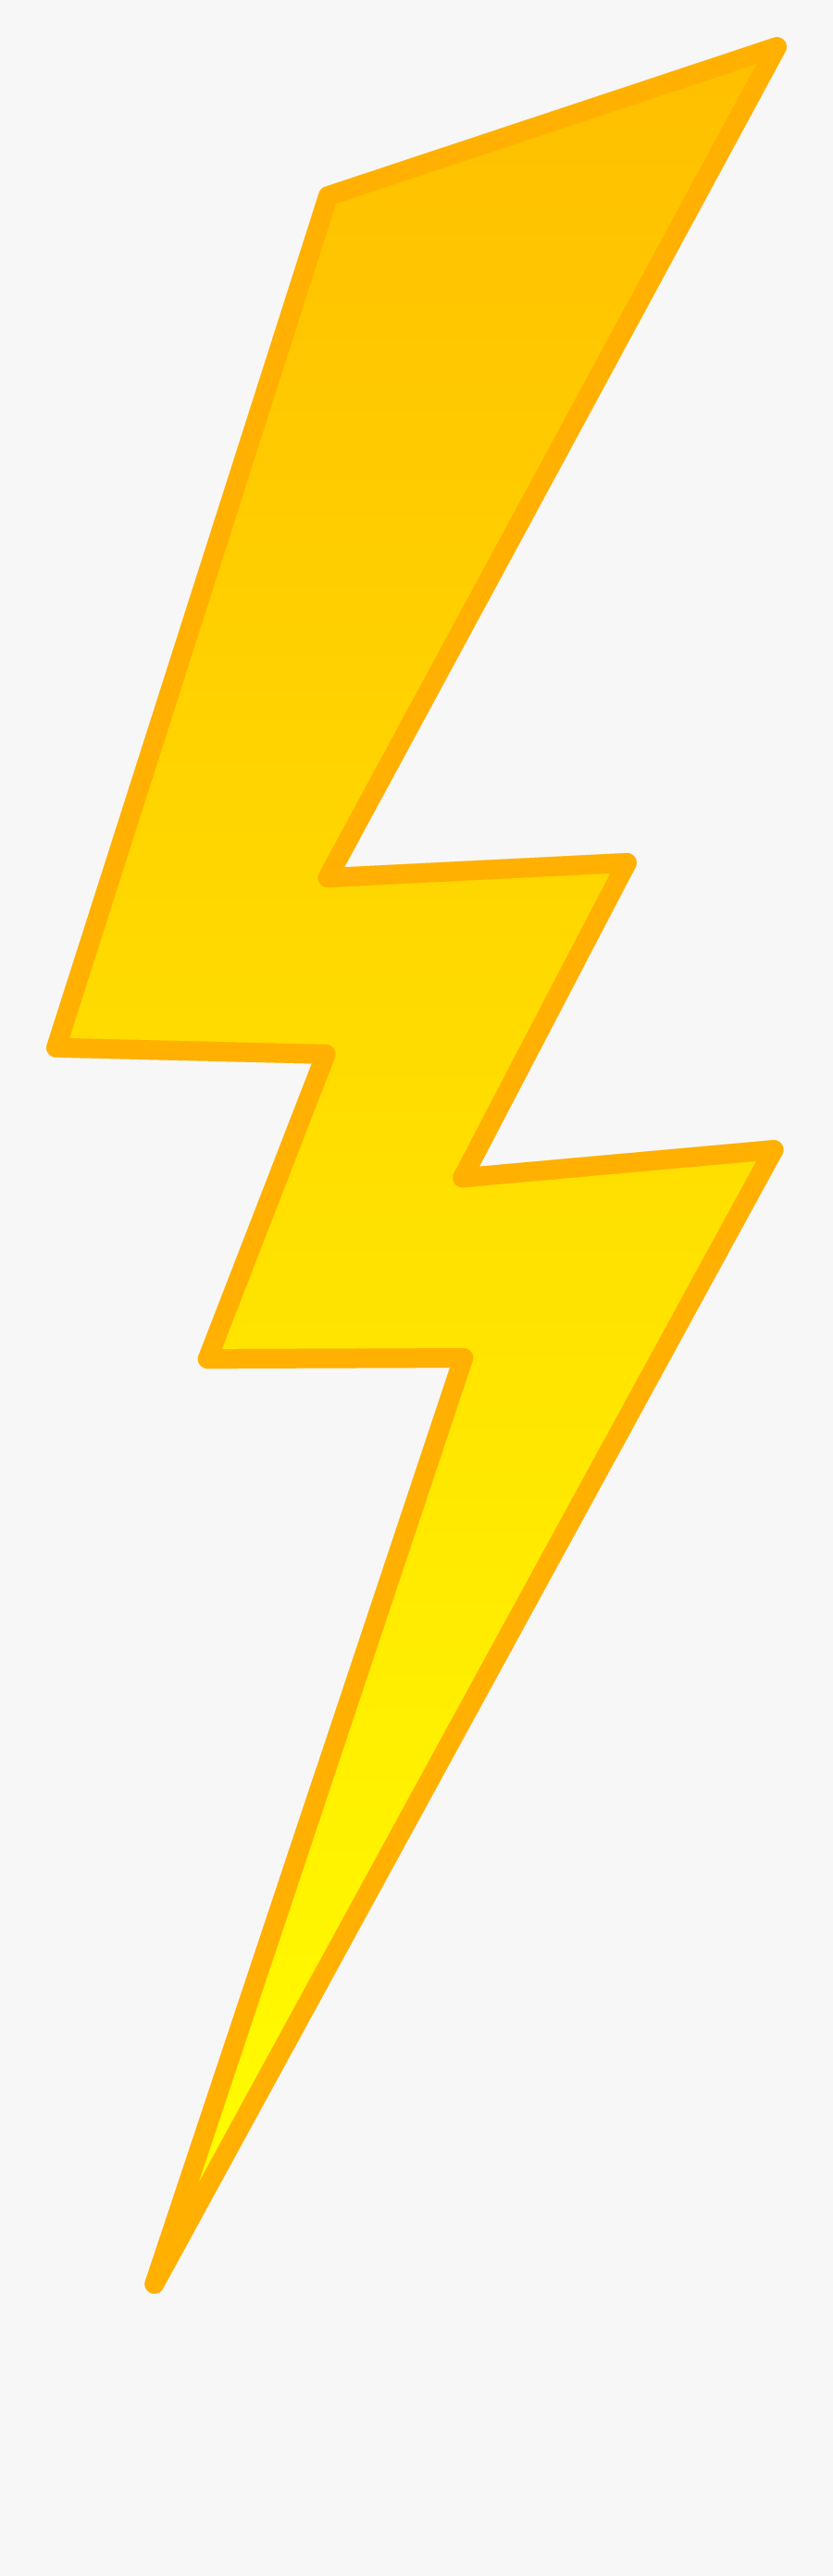 Golden Lightning Bolt Symbol Free Clip Art - Transparent Lightning Bolt Png, Transparent Clipart